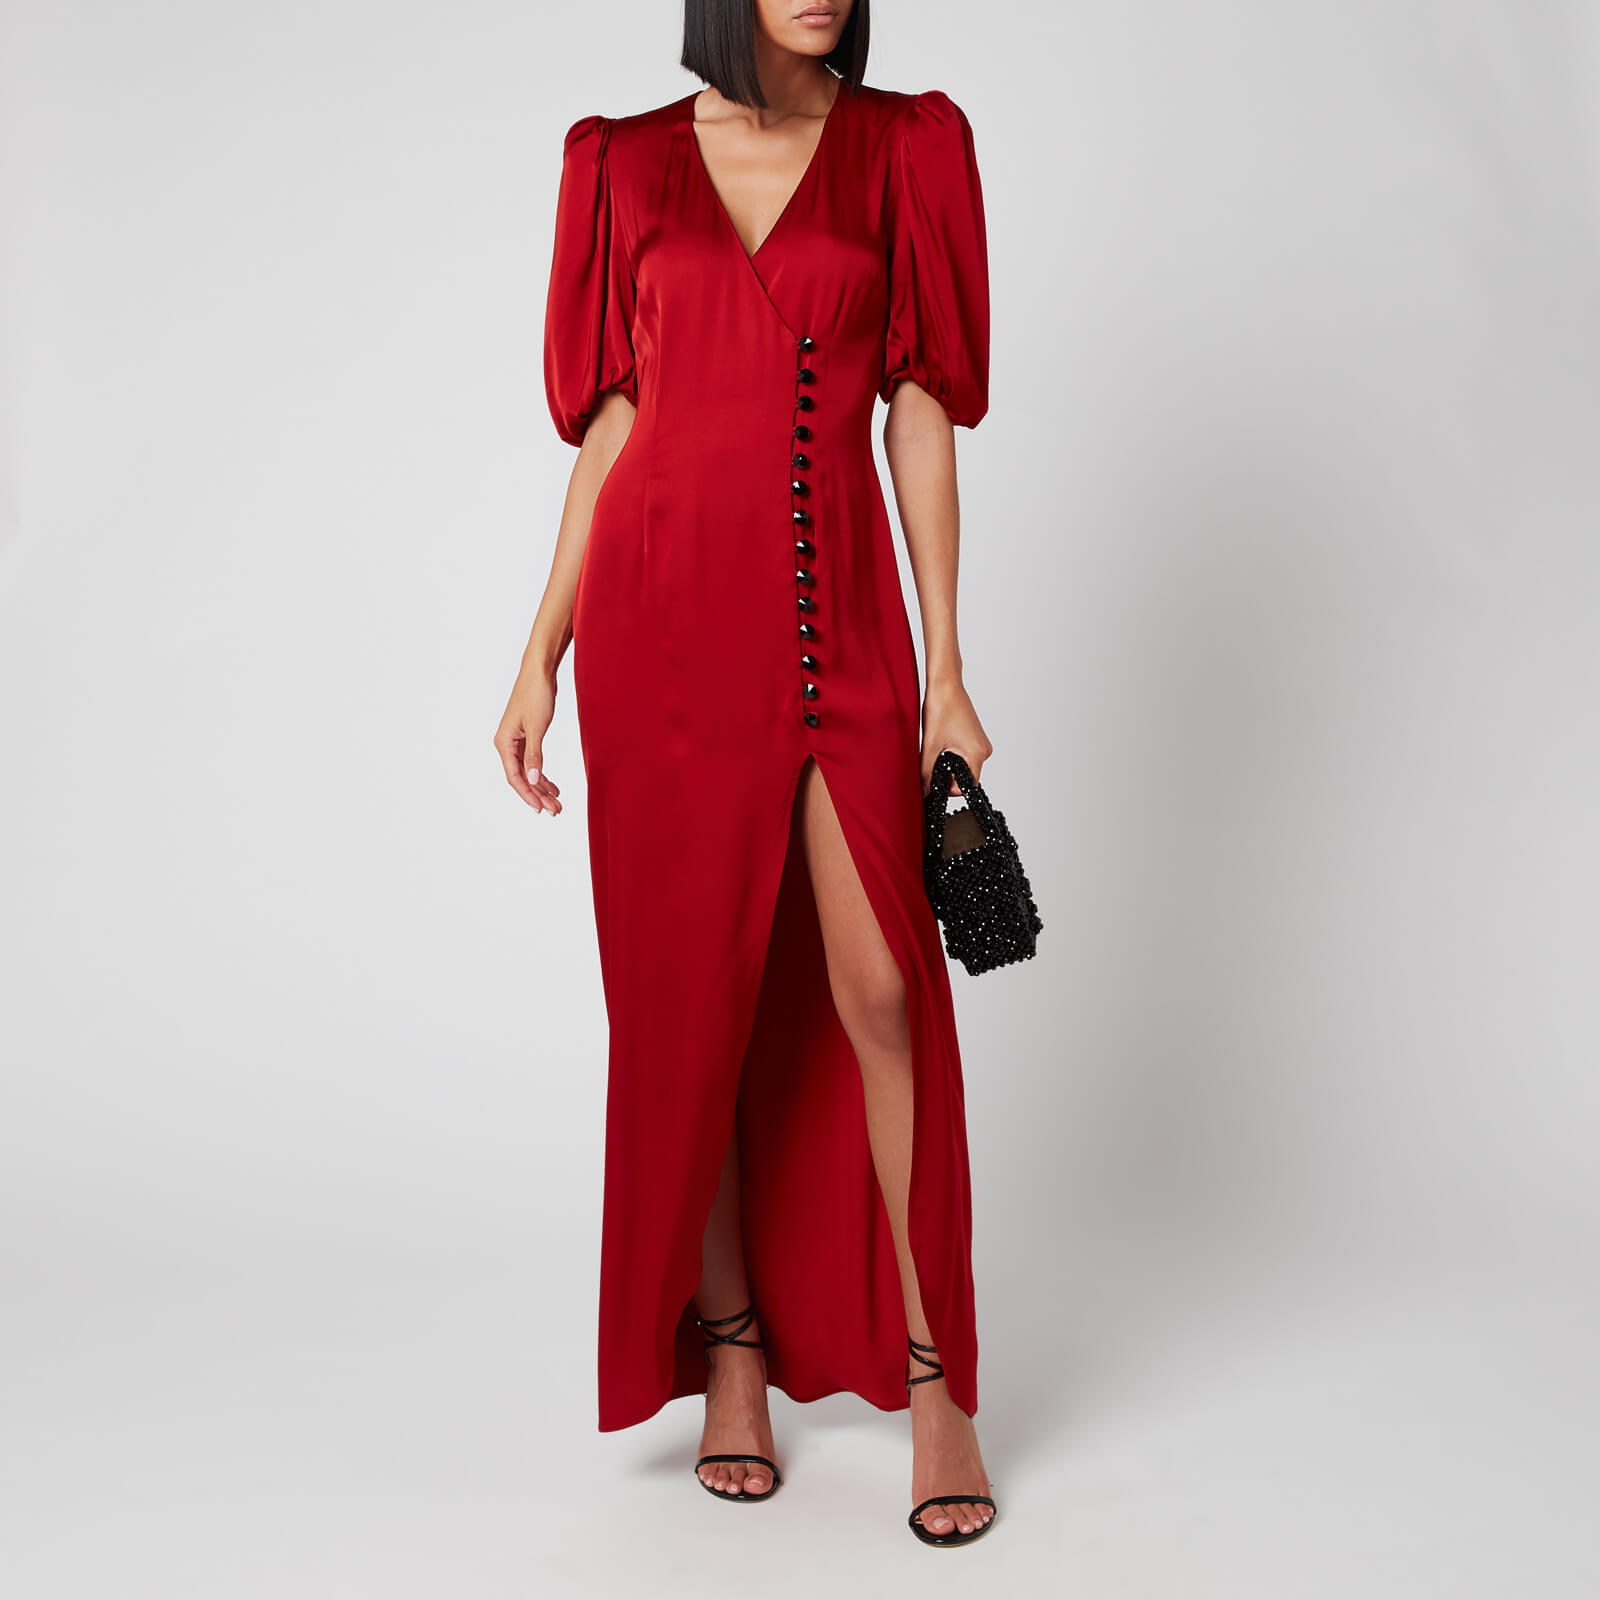 De La Vali Women's Ohio Dress - Red Solid - UK 8